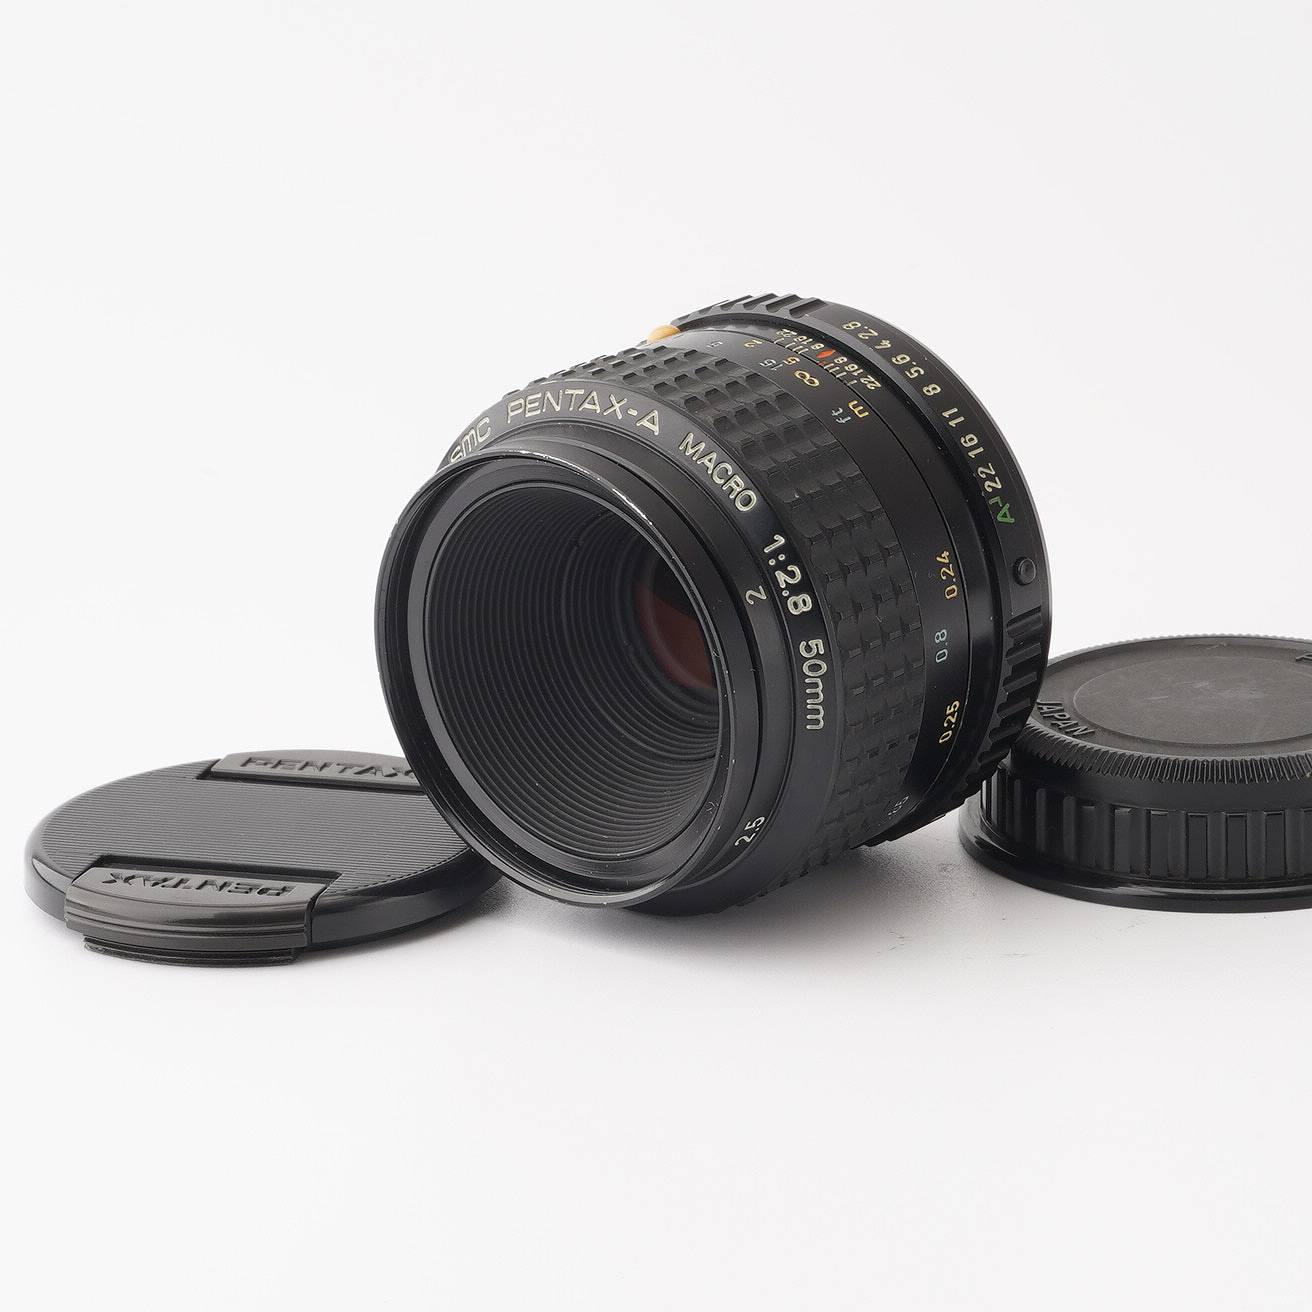 SMC PENTAX-A MACRO F2.8 50mm - レンズ(ズーム)